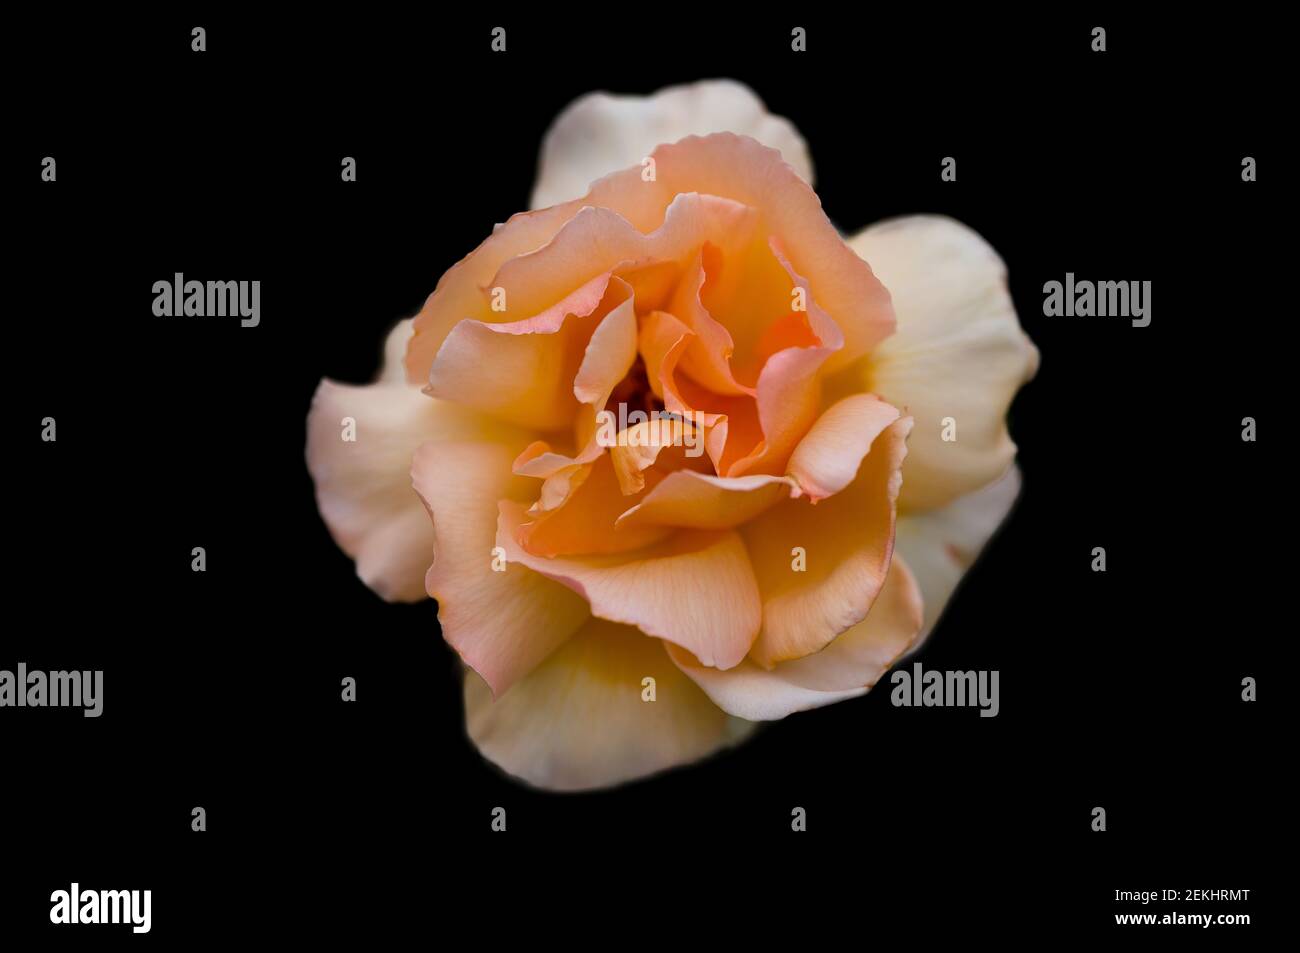 Close-up of orange rose against black background Stock Photo